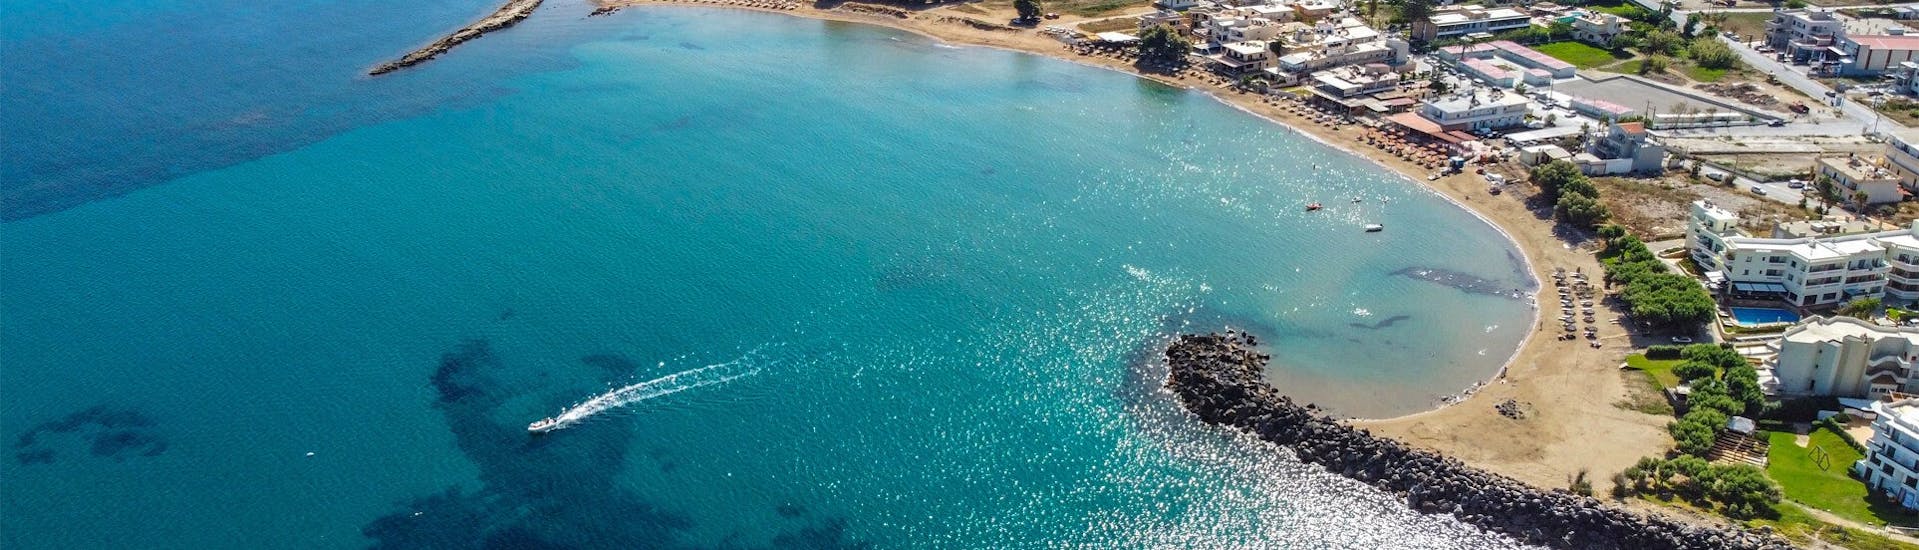 Die Küste von Kissamos und das wunderschöne blaue kretische Wasser während dem Kayak-Verleih in Kissamos.